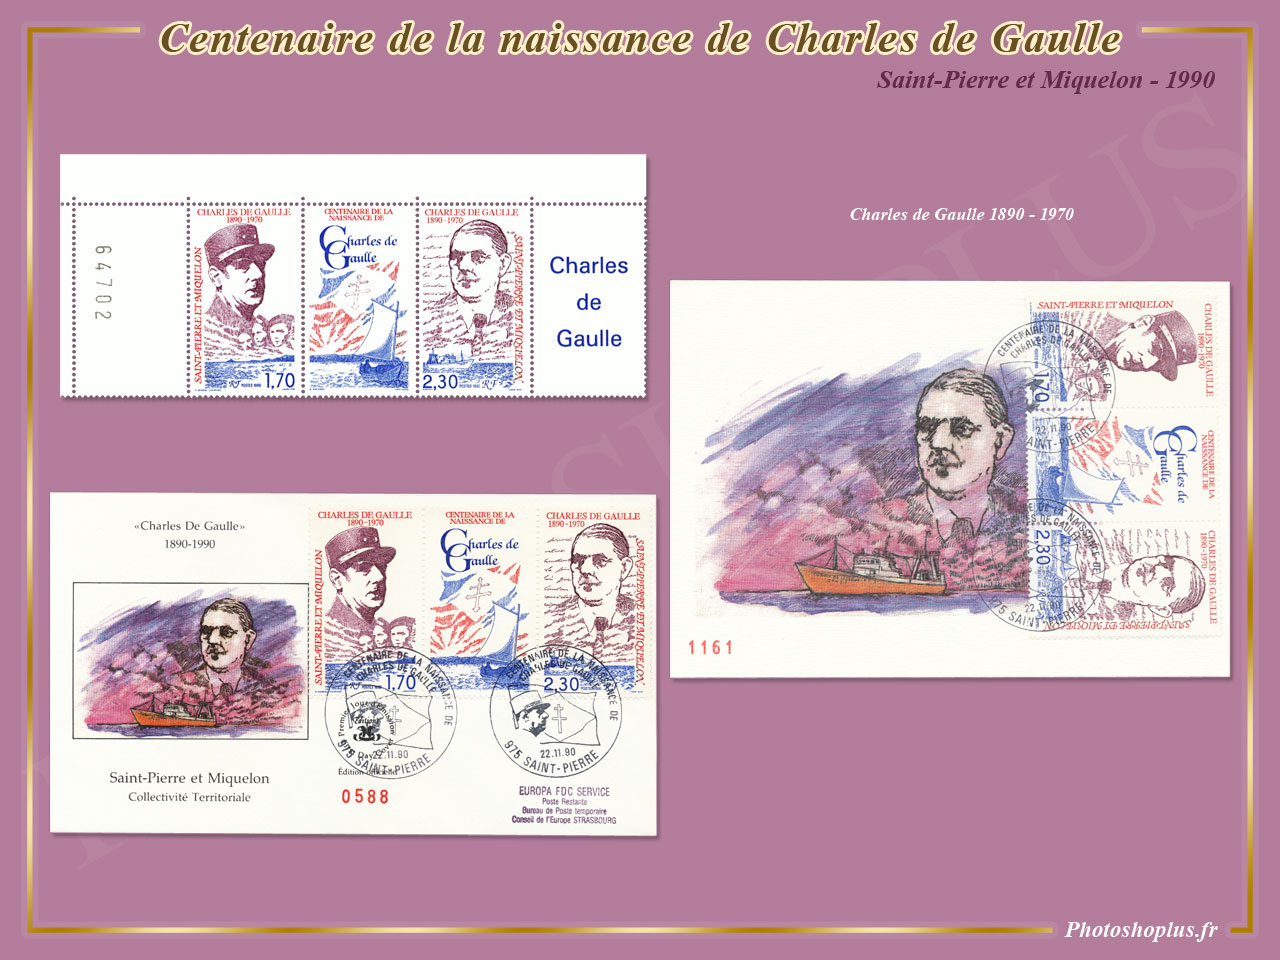 Centenaire de la naissance de Charles de Gaulle